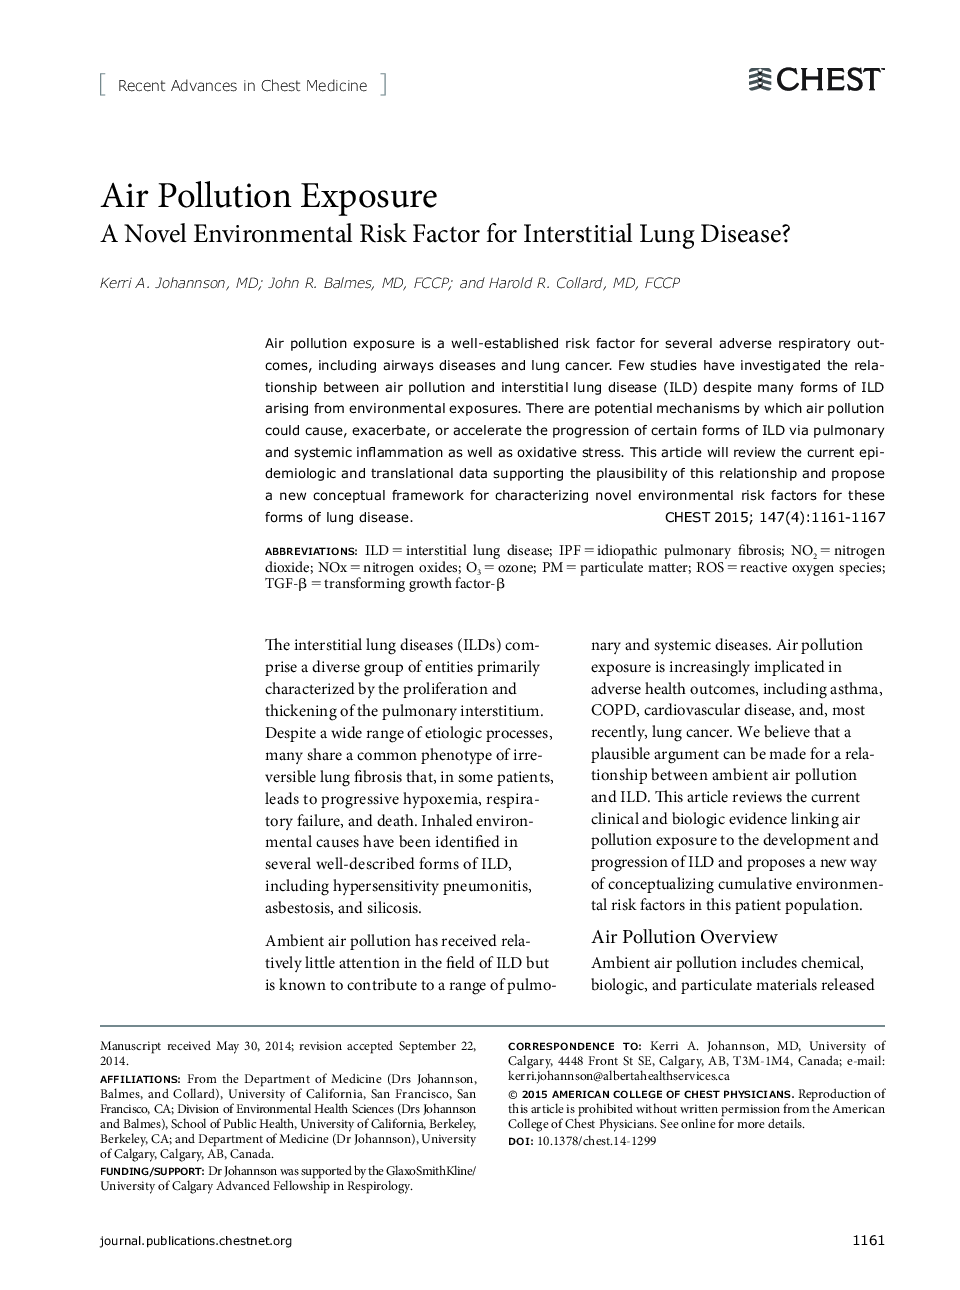 قرار گرفتن در معرض آلودگی هوا: عامل خطر ابتلا به زیست محیطی برای بیماری بینابینی ریوی؟ 